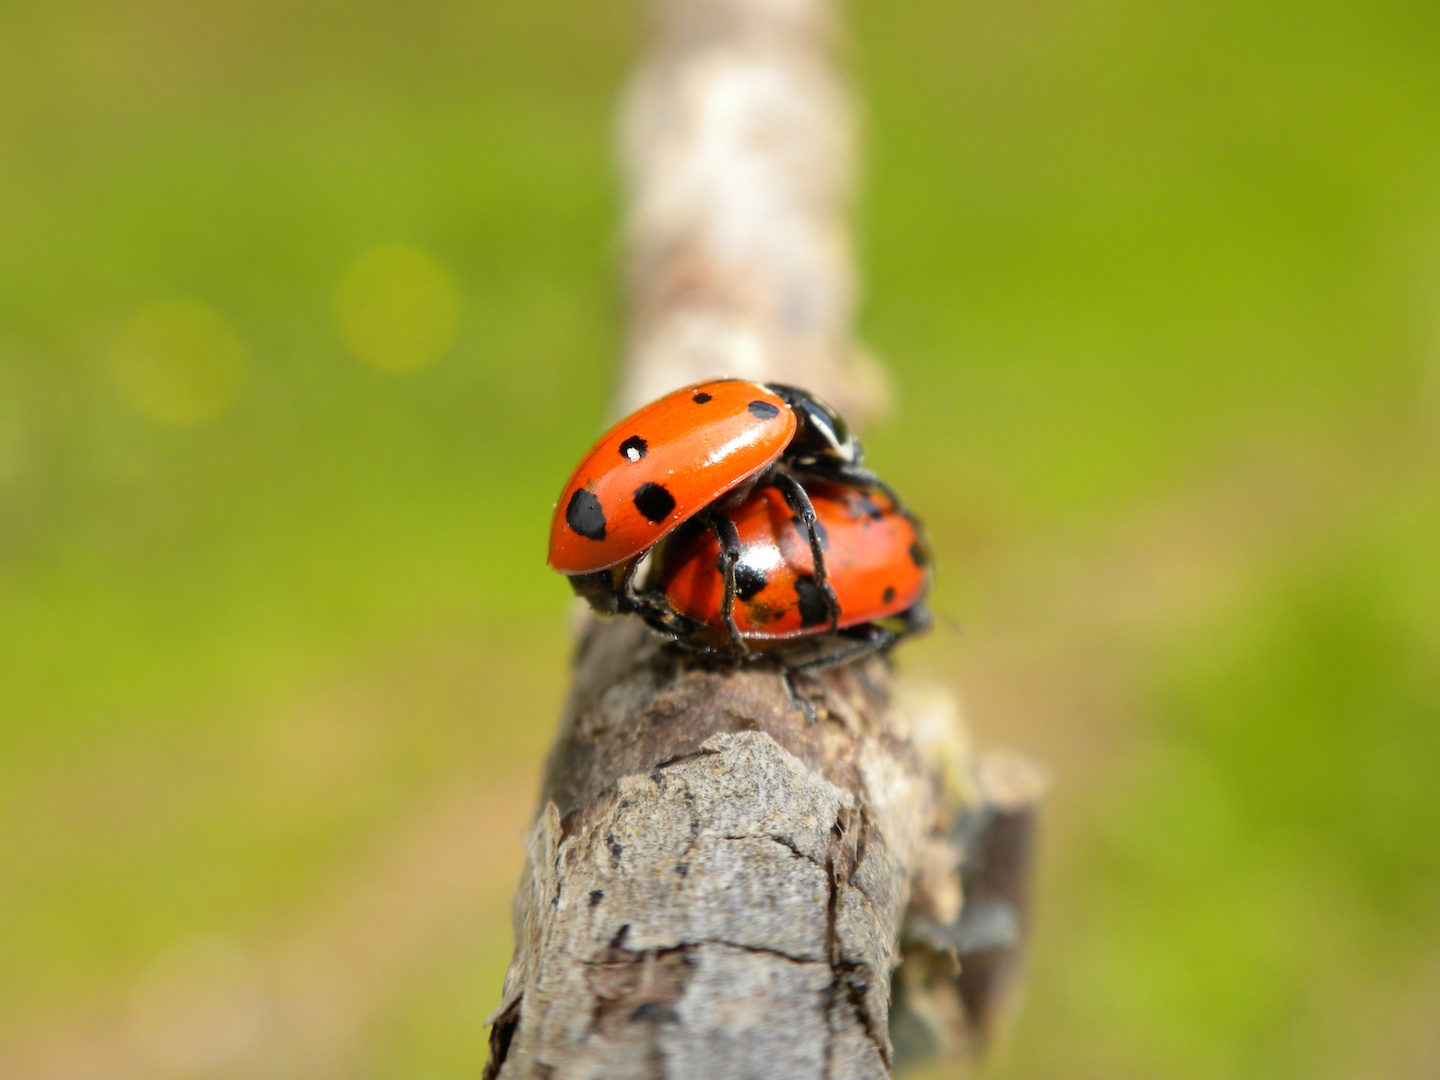 Ladybugs Mating, Close-up, Day, Insect, Ladybug, HQ Photo